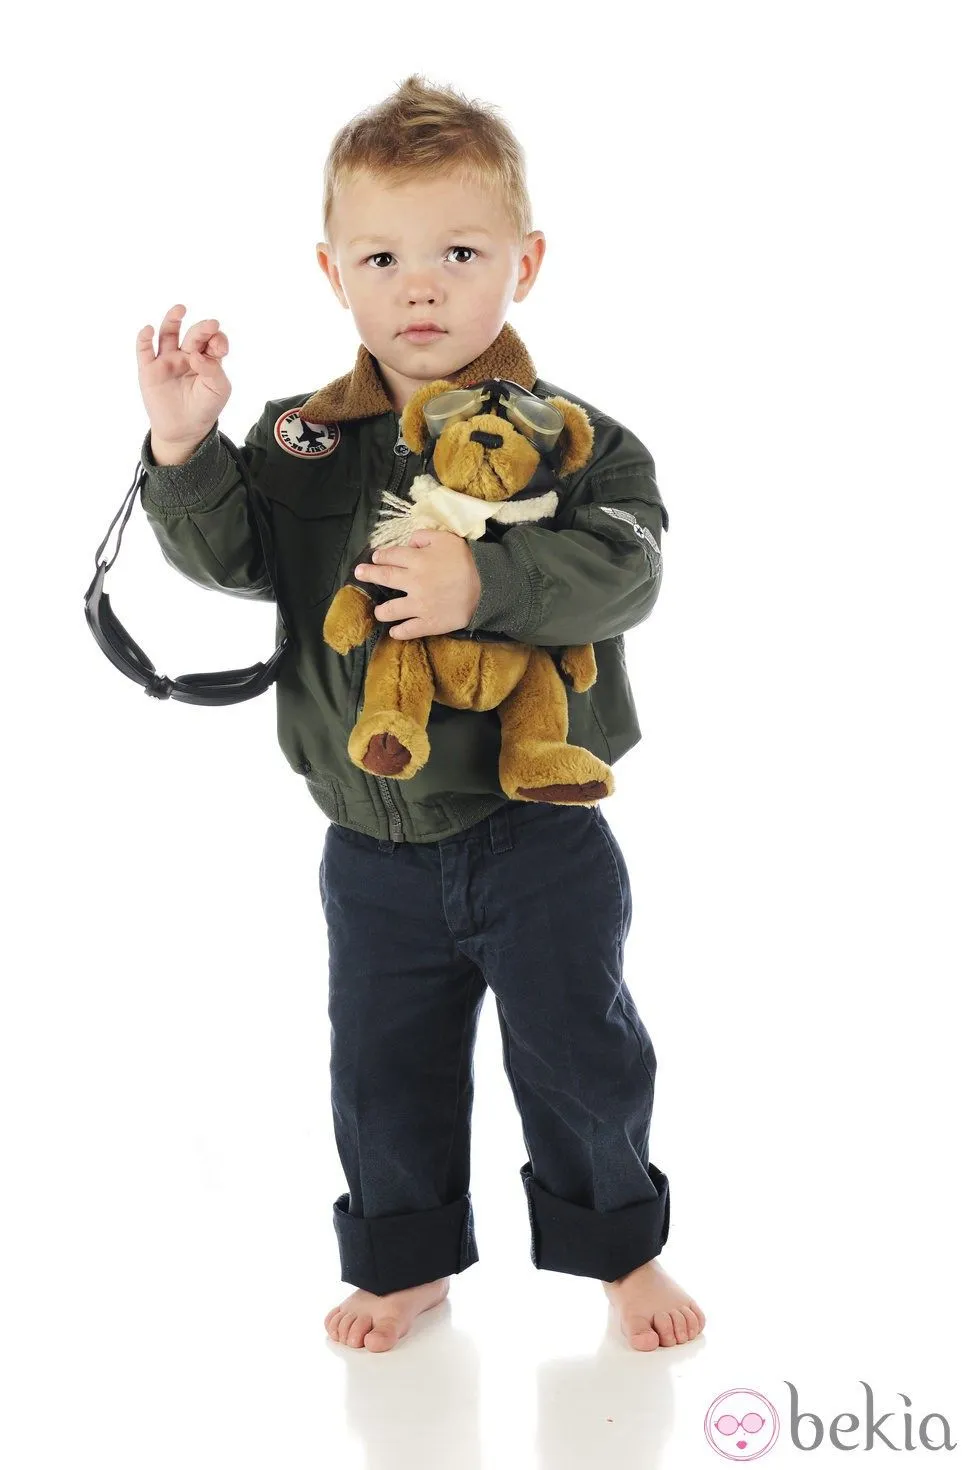 Disfraz de piloto para niño: Disfraces de niños para Halloween en ...